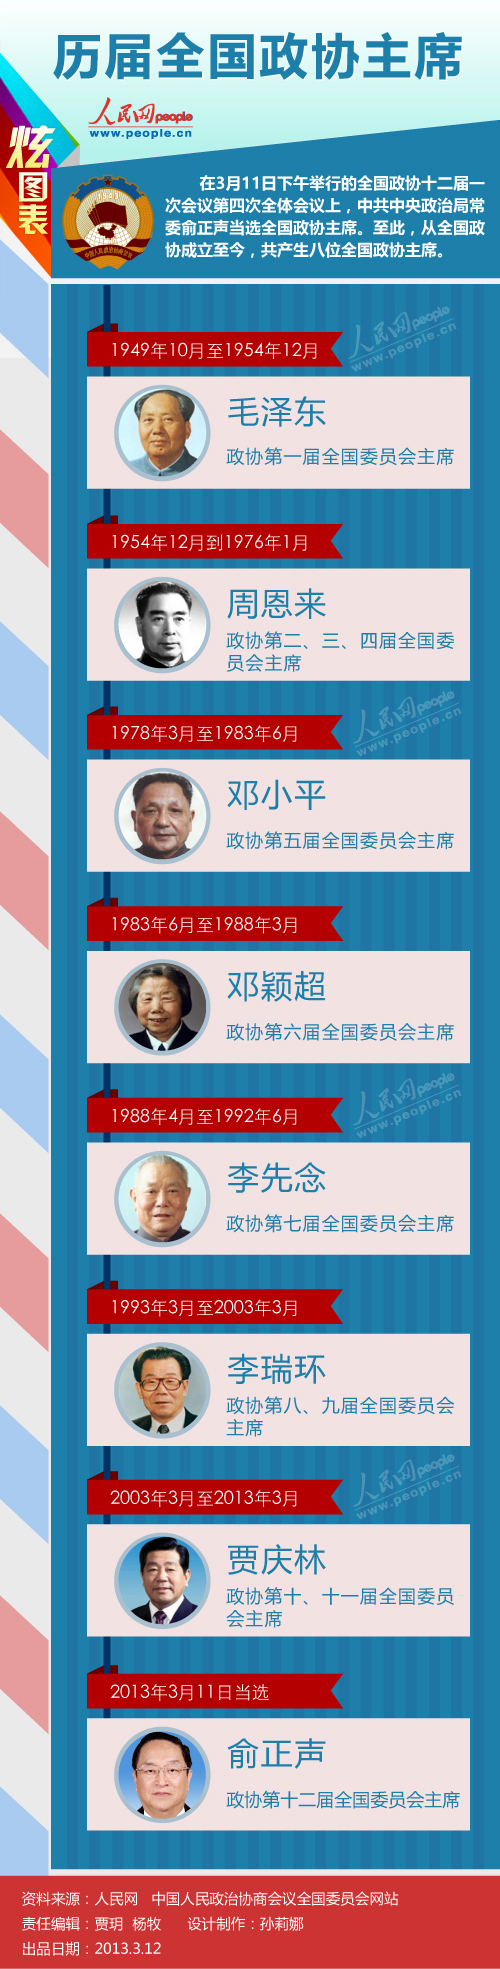 炫图表第9期:历届全国政协主席